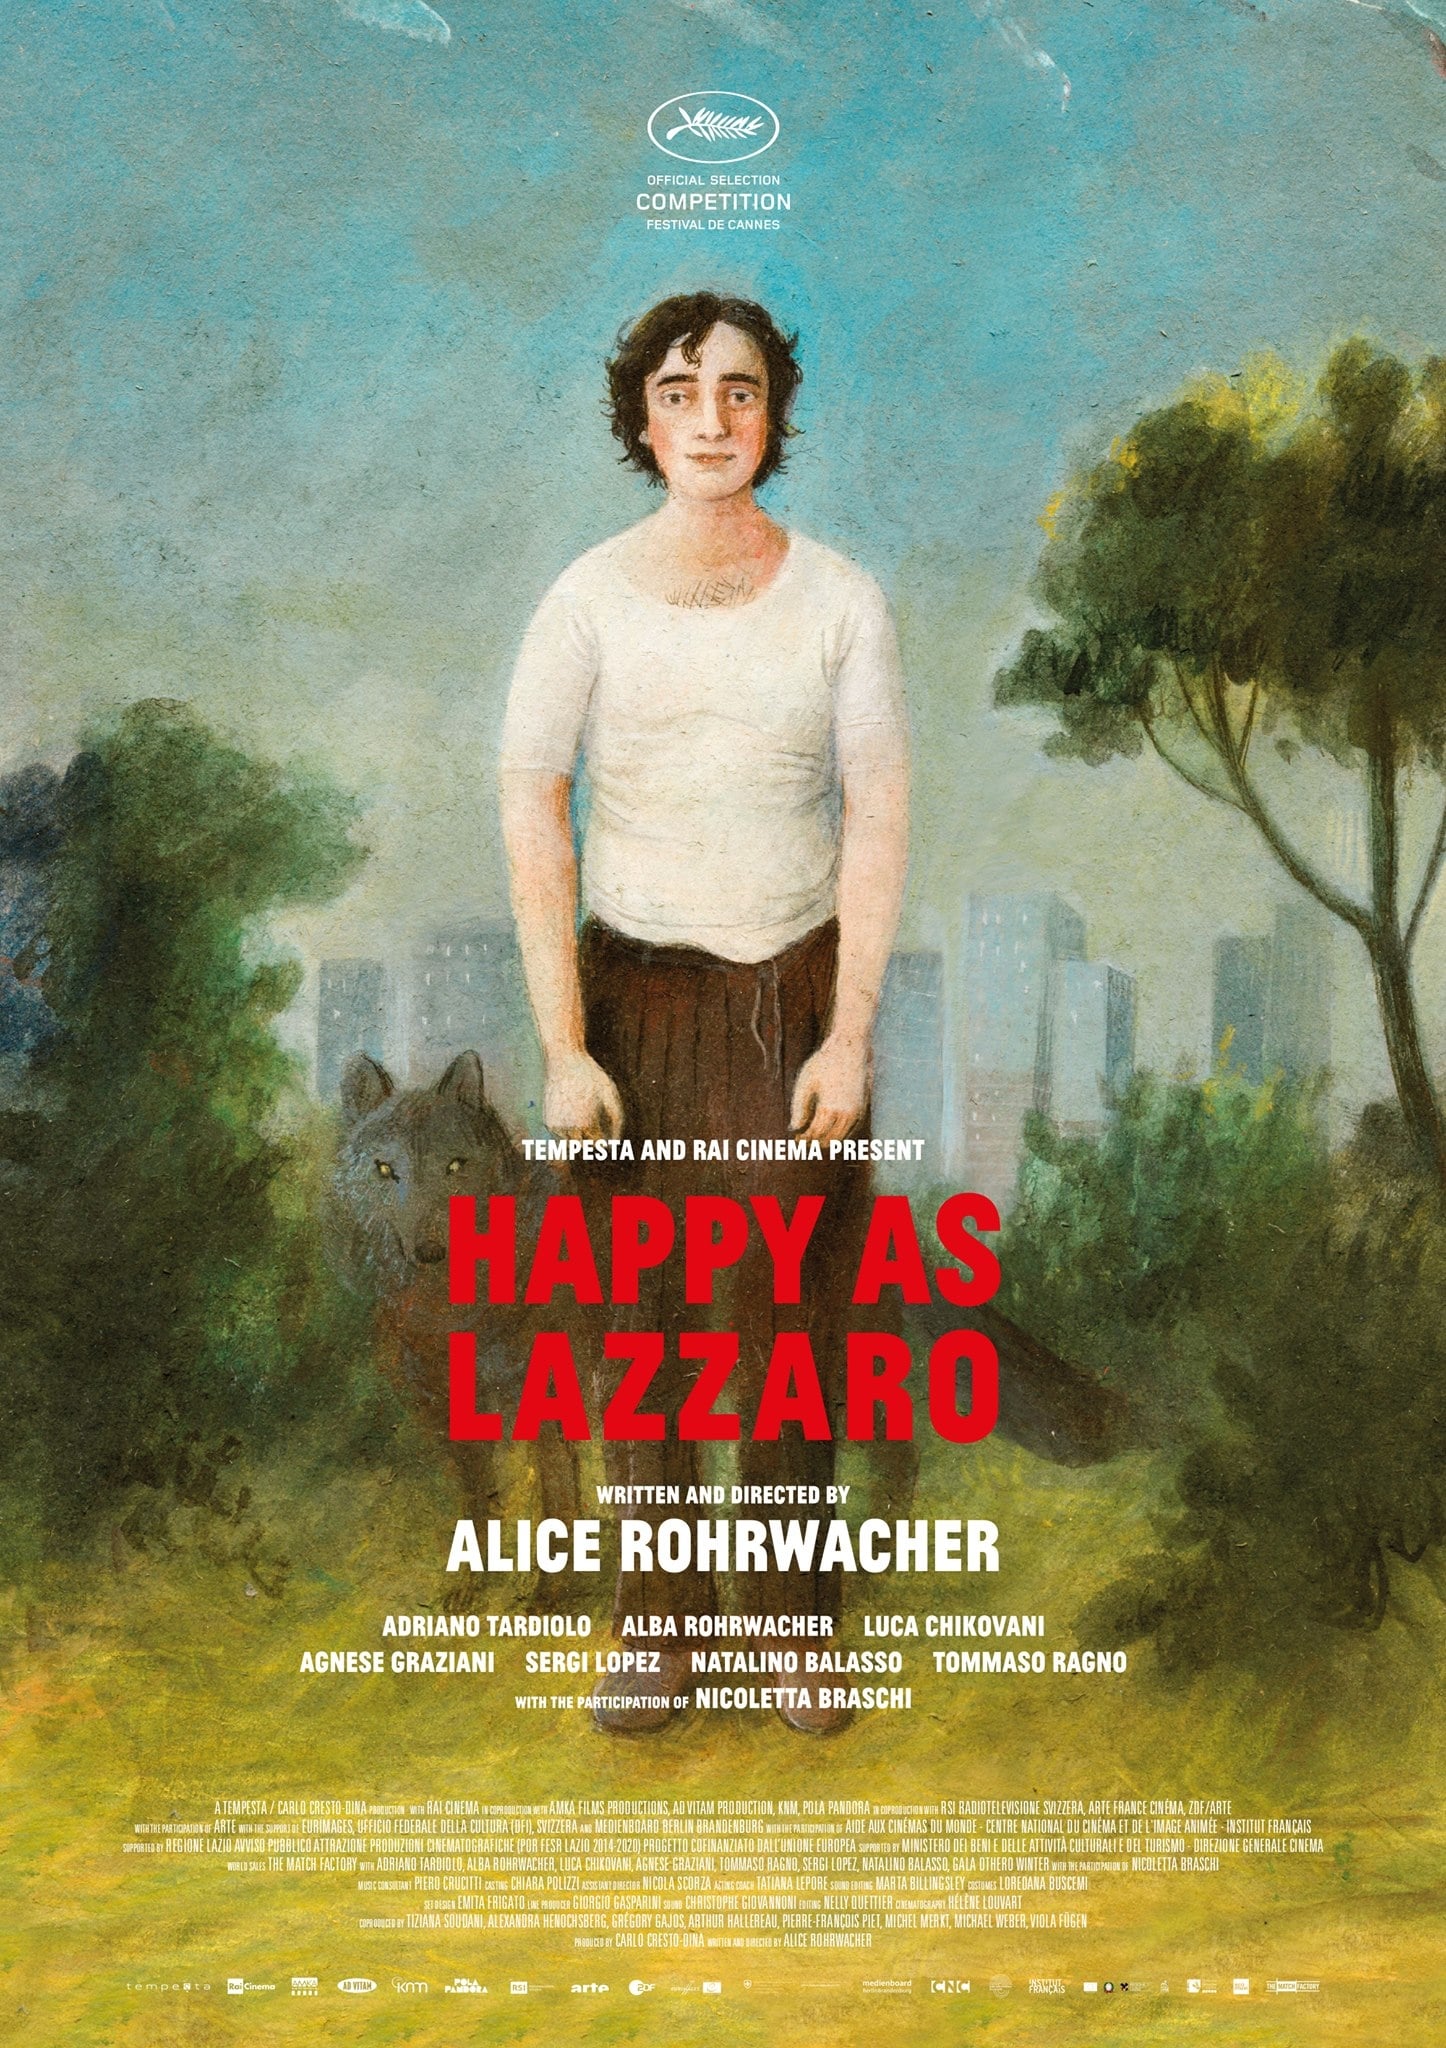 Poster de la película "Happy as Lazzaro"